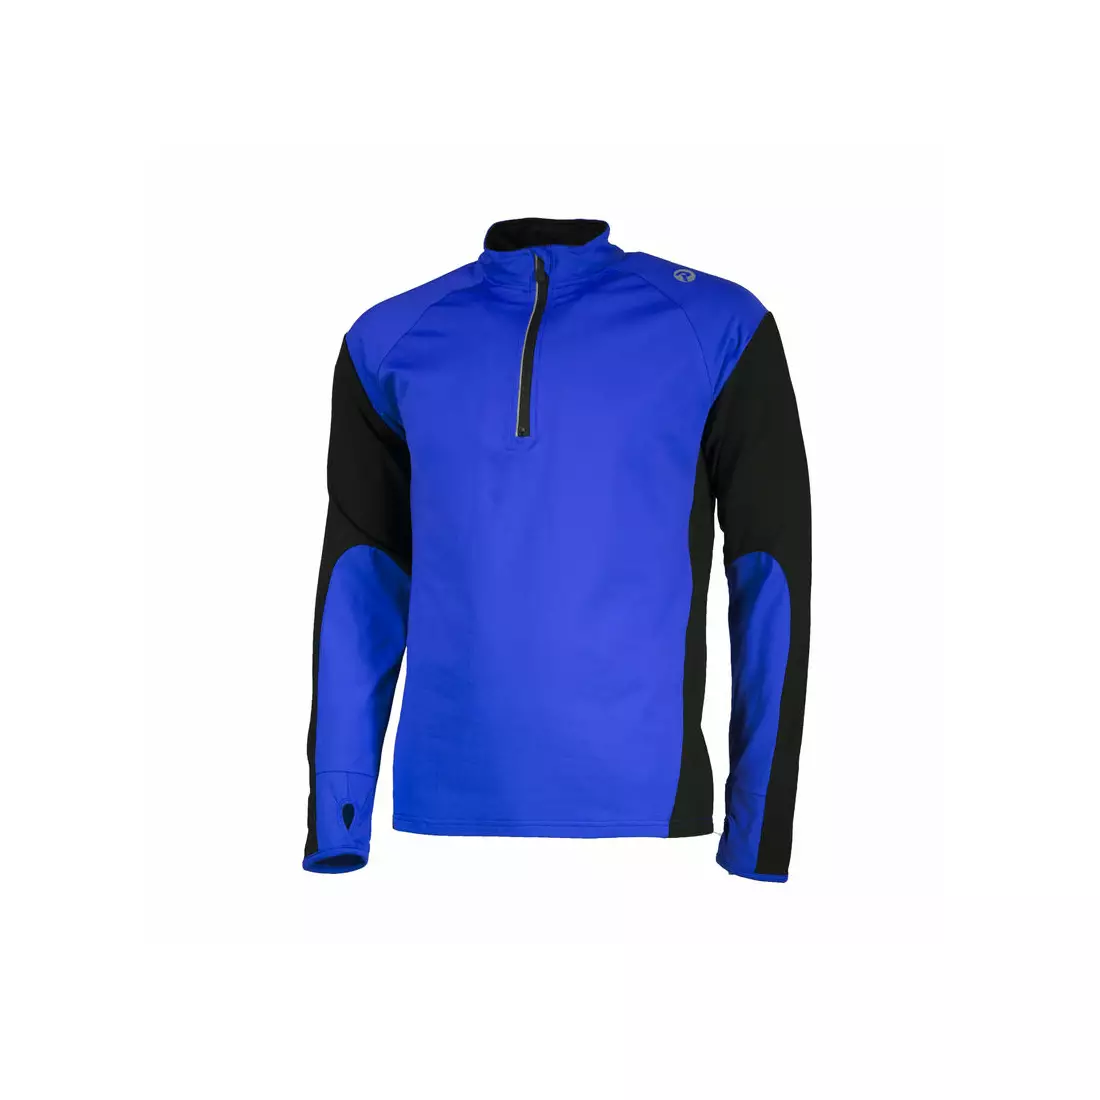 ROGELLI RUN - DILLON - férfi enyhén szigetelt futócipő, színe: kék